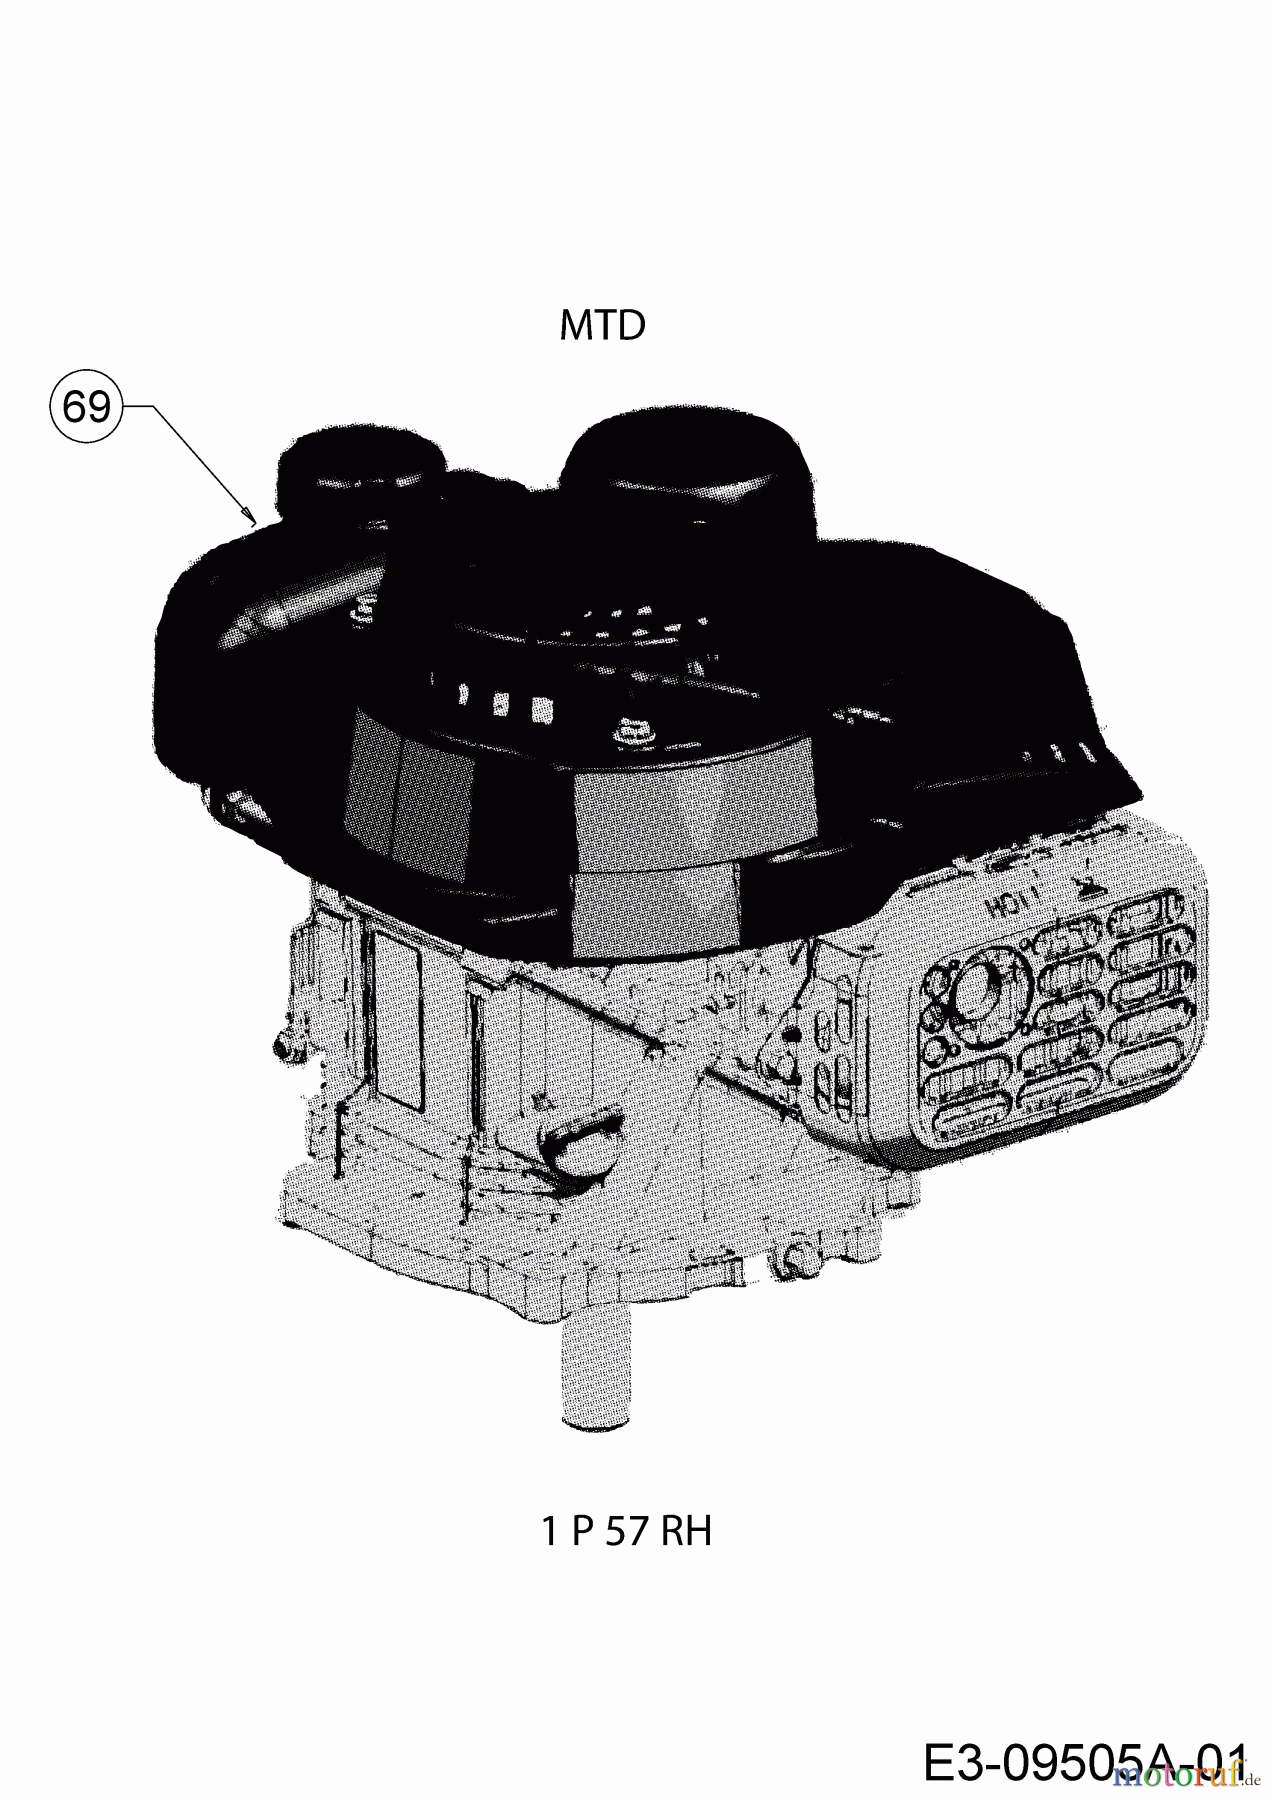  MTD Petrol mower MTD 46 11A-J1SJ600  (2019) Engine MTD